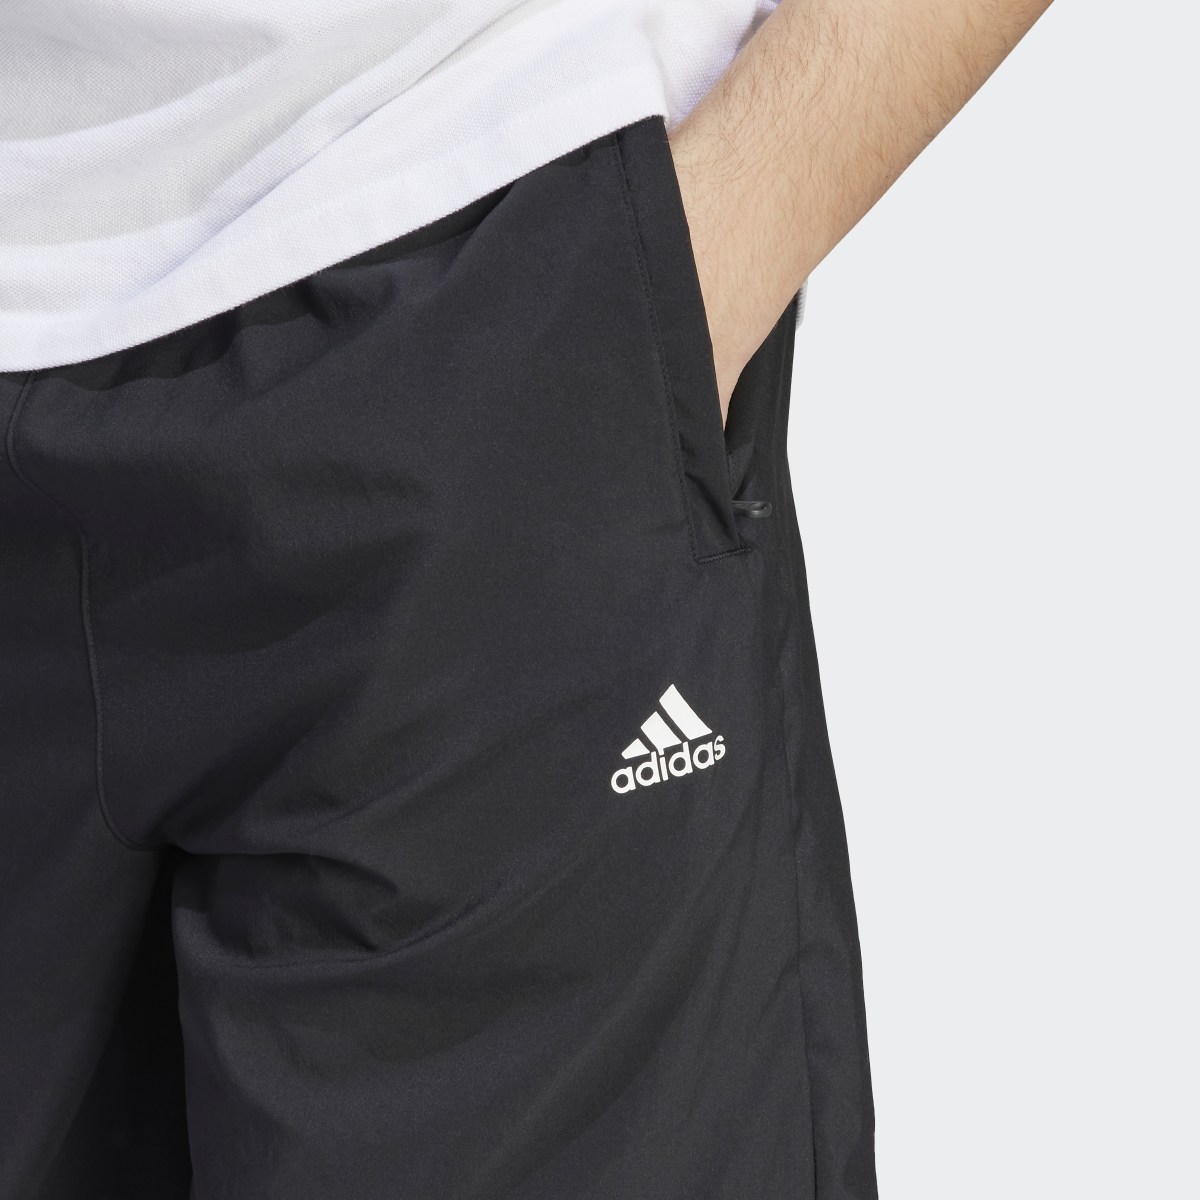 Adidas Scribble Shorts. 6